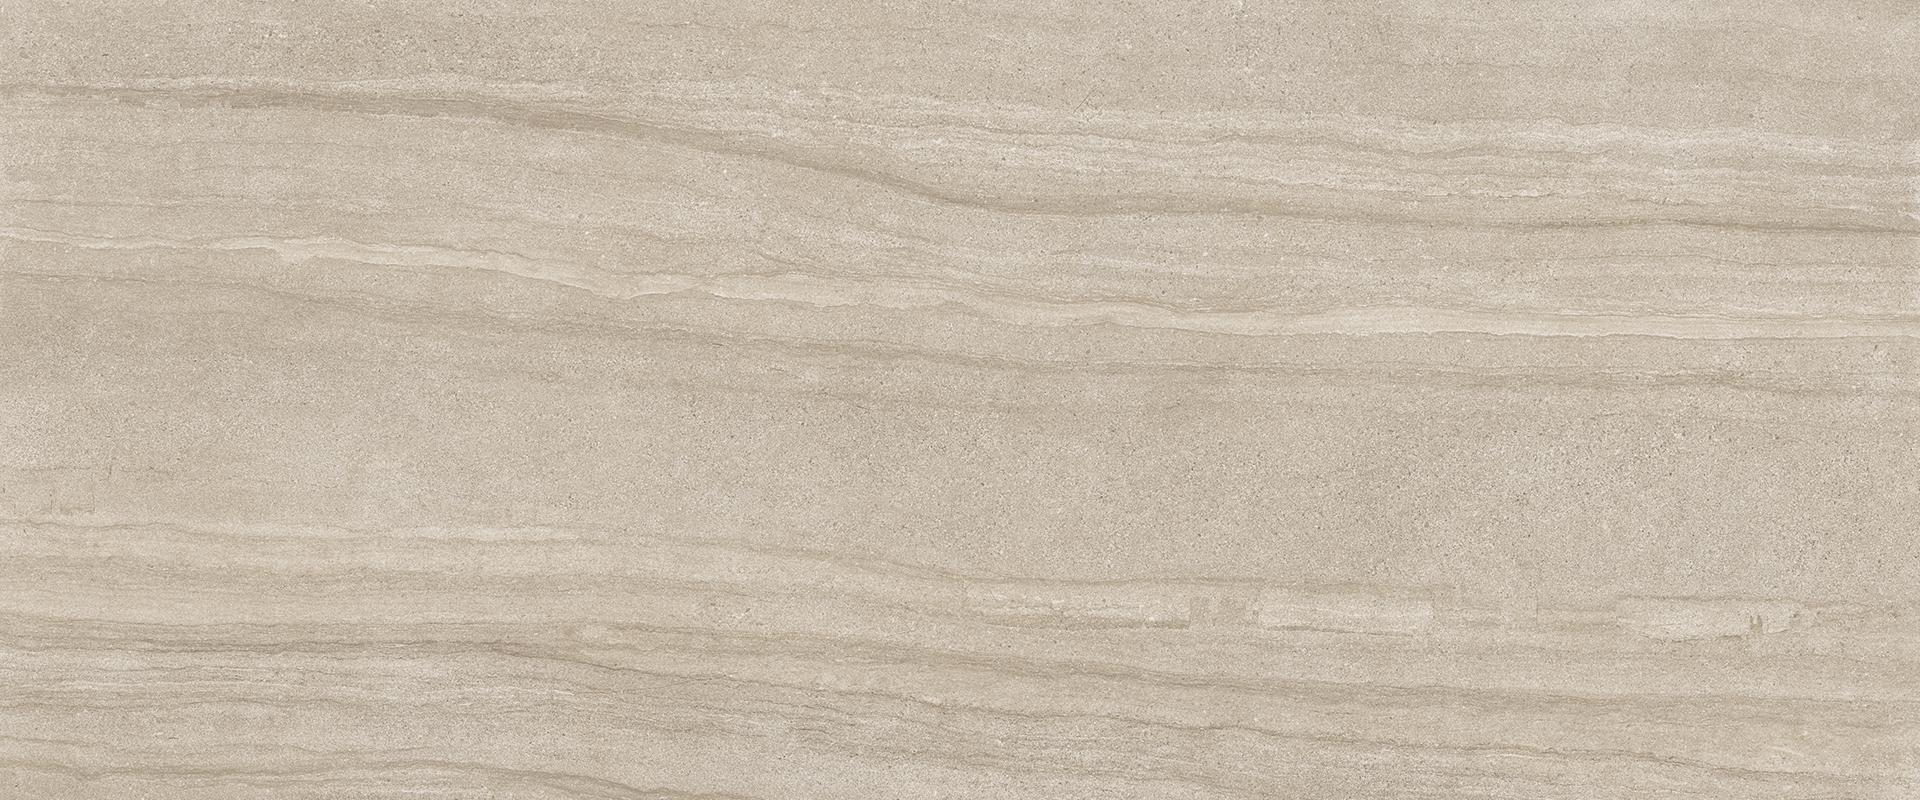 Stone Project: Falda Sand Field Tile (12"x24"x9.5-mm | semi glossy)